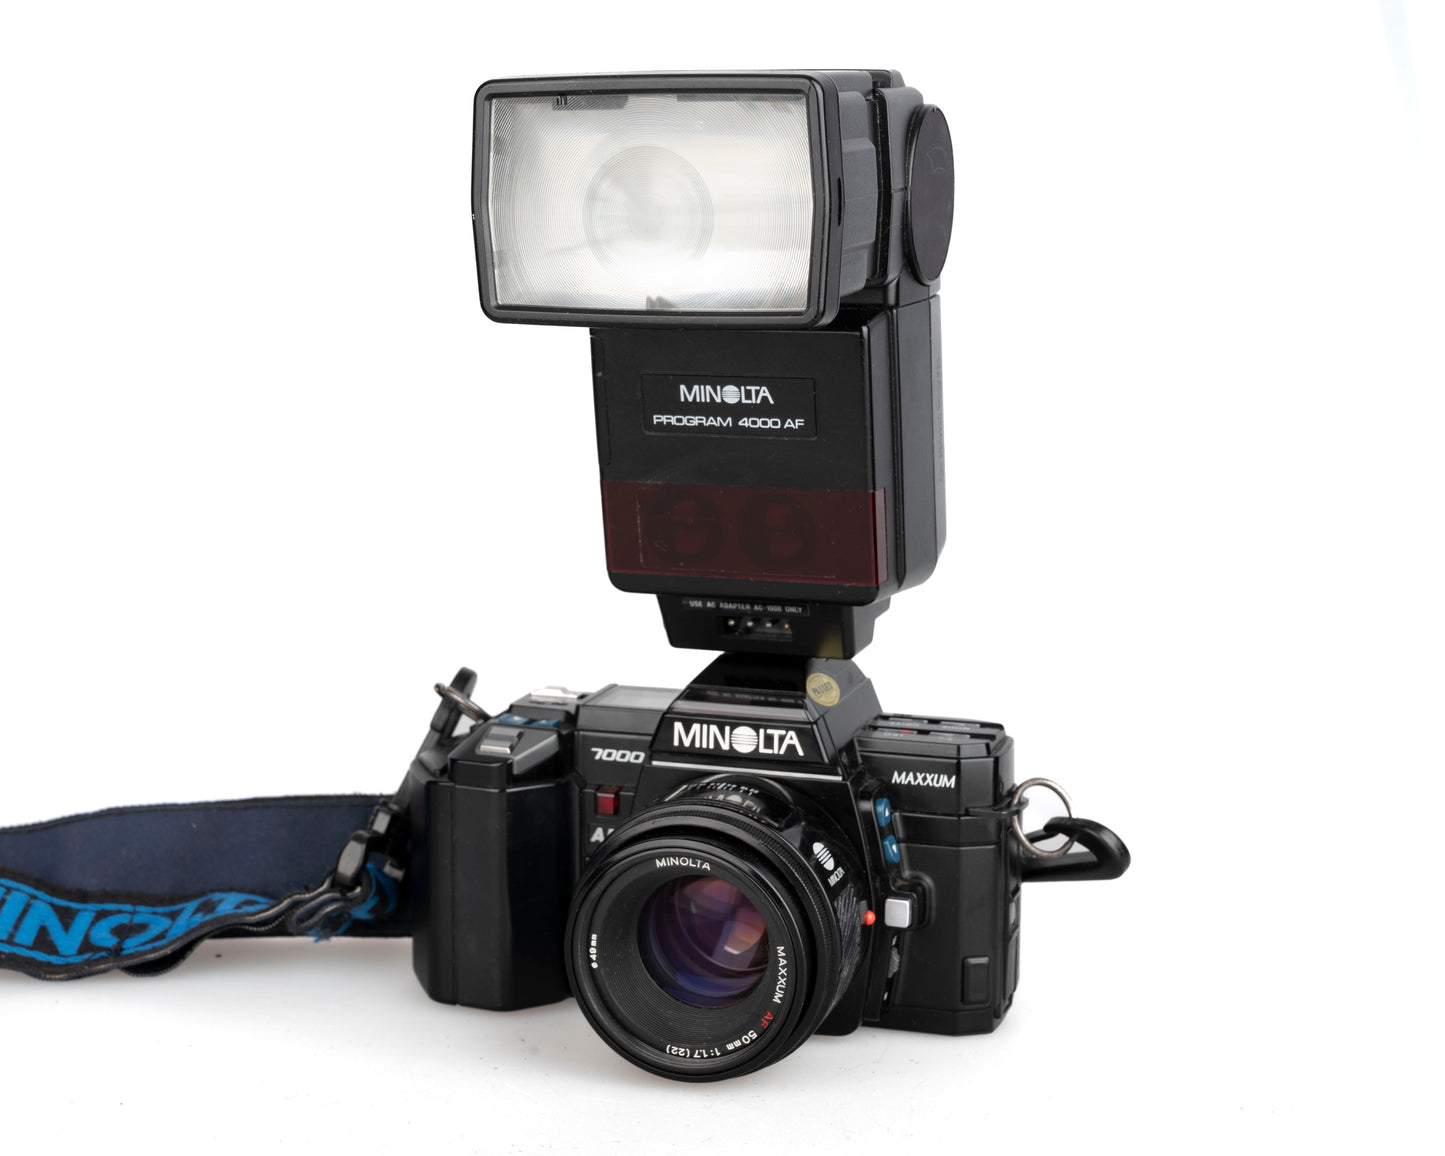 Minolta Maxxum 7000 SLR à film 35 mm avec objectif 50 mm f1.7 + flash 4000AF + Données de programme Back 70 (série 18038659)